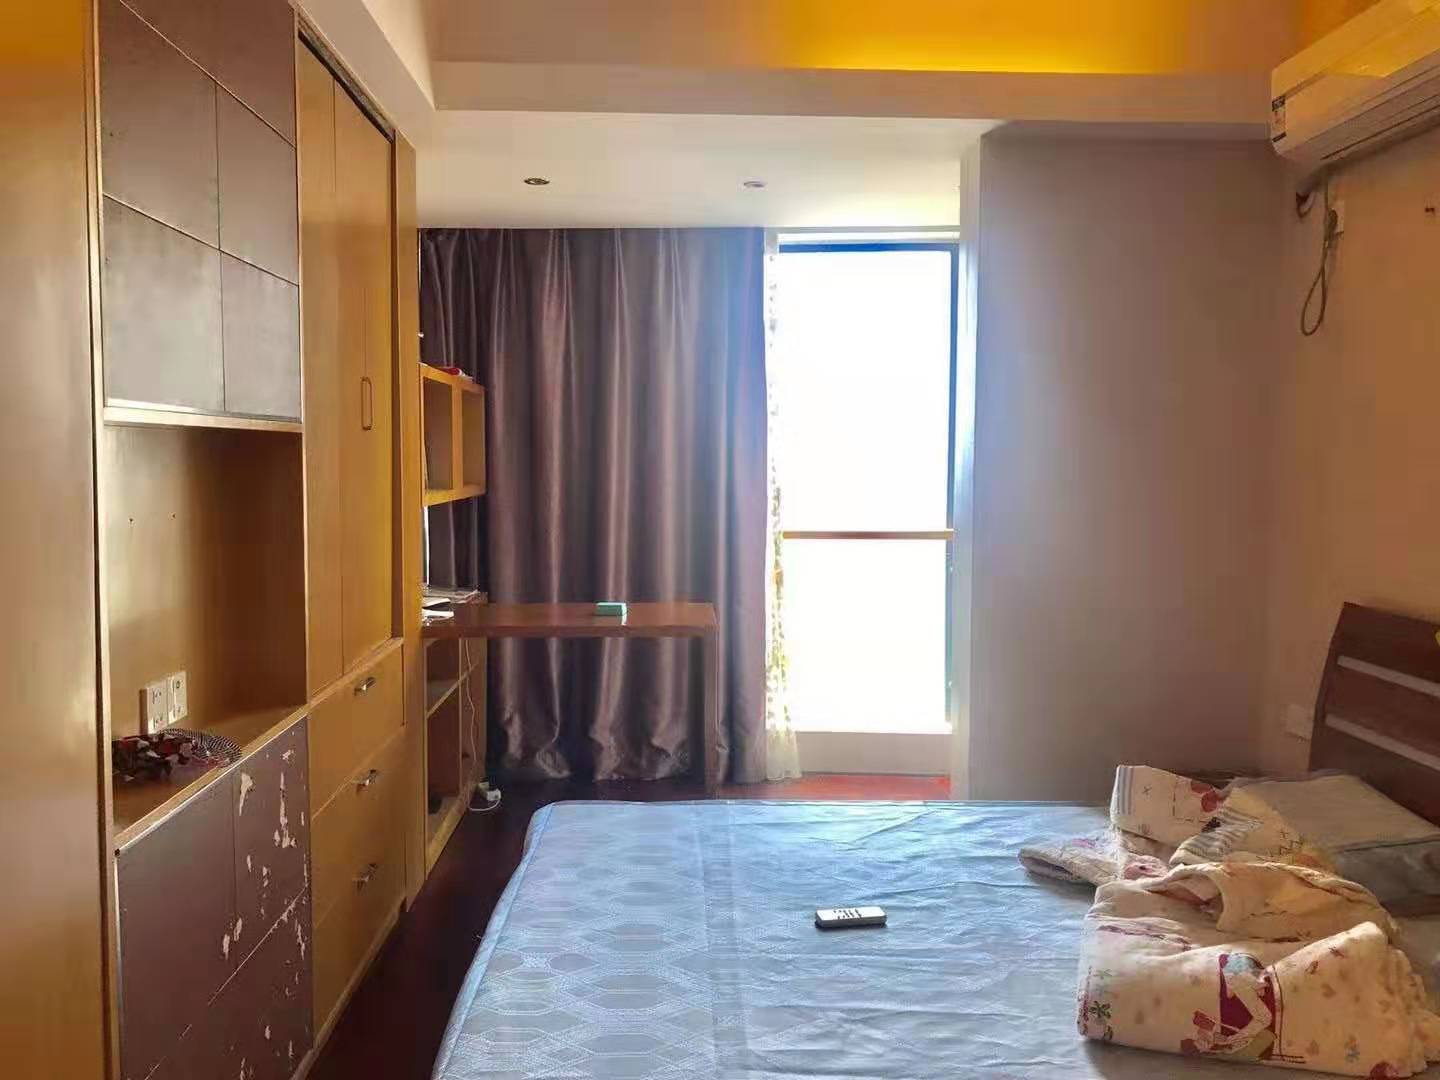 Bedrooms-2nd Bedroom